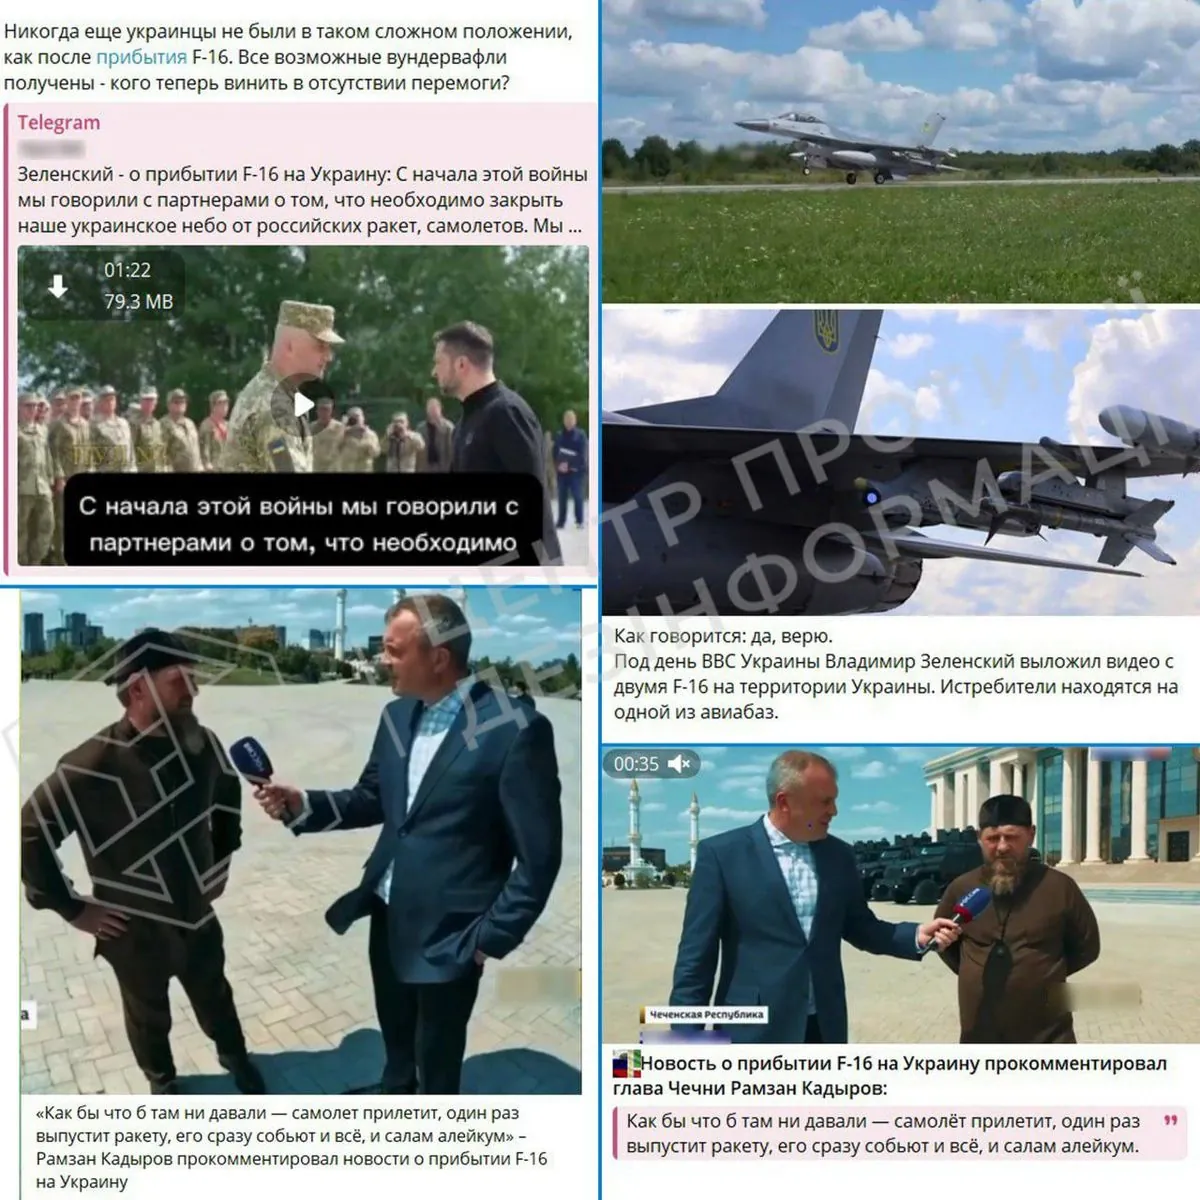 rossiya-pitaetsya-cherez-propagandistov-diskreditirovat-poyavlenie-f-16-v-ukraine-tspi